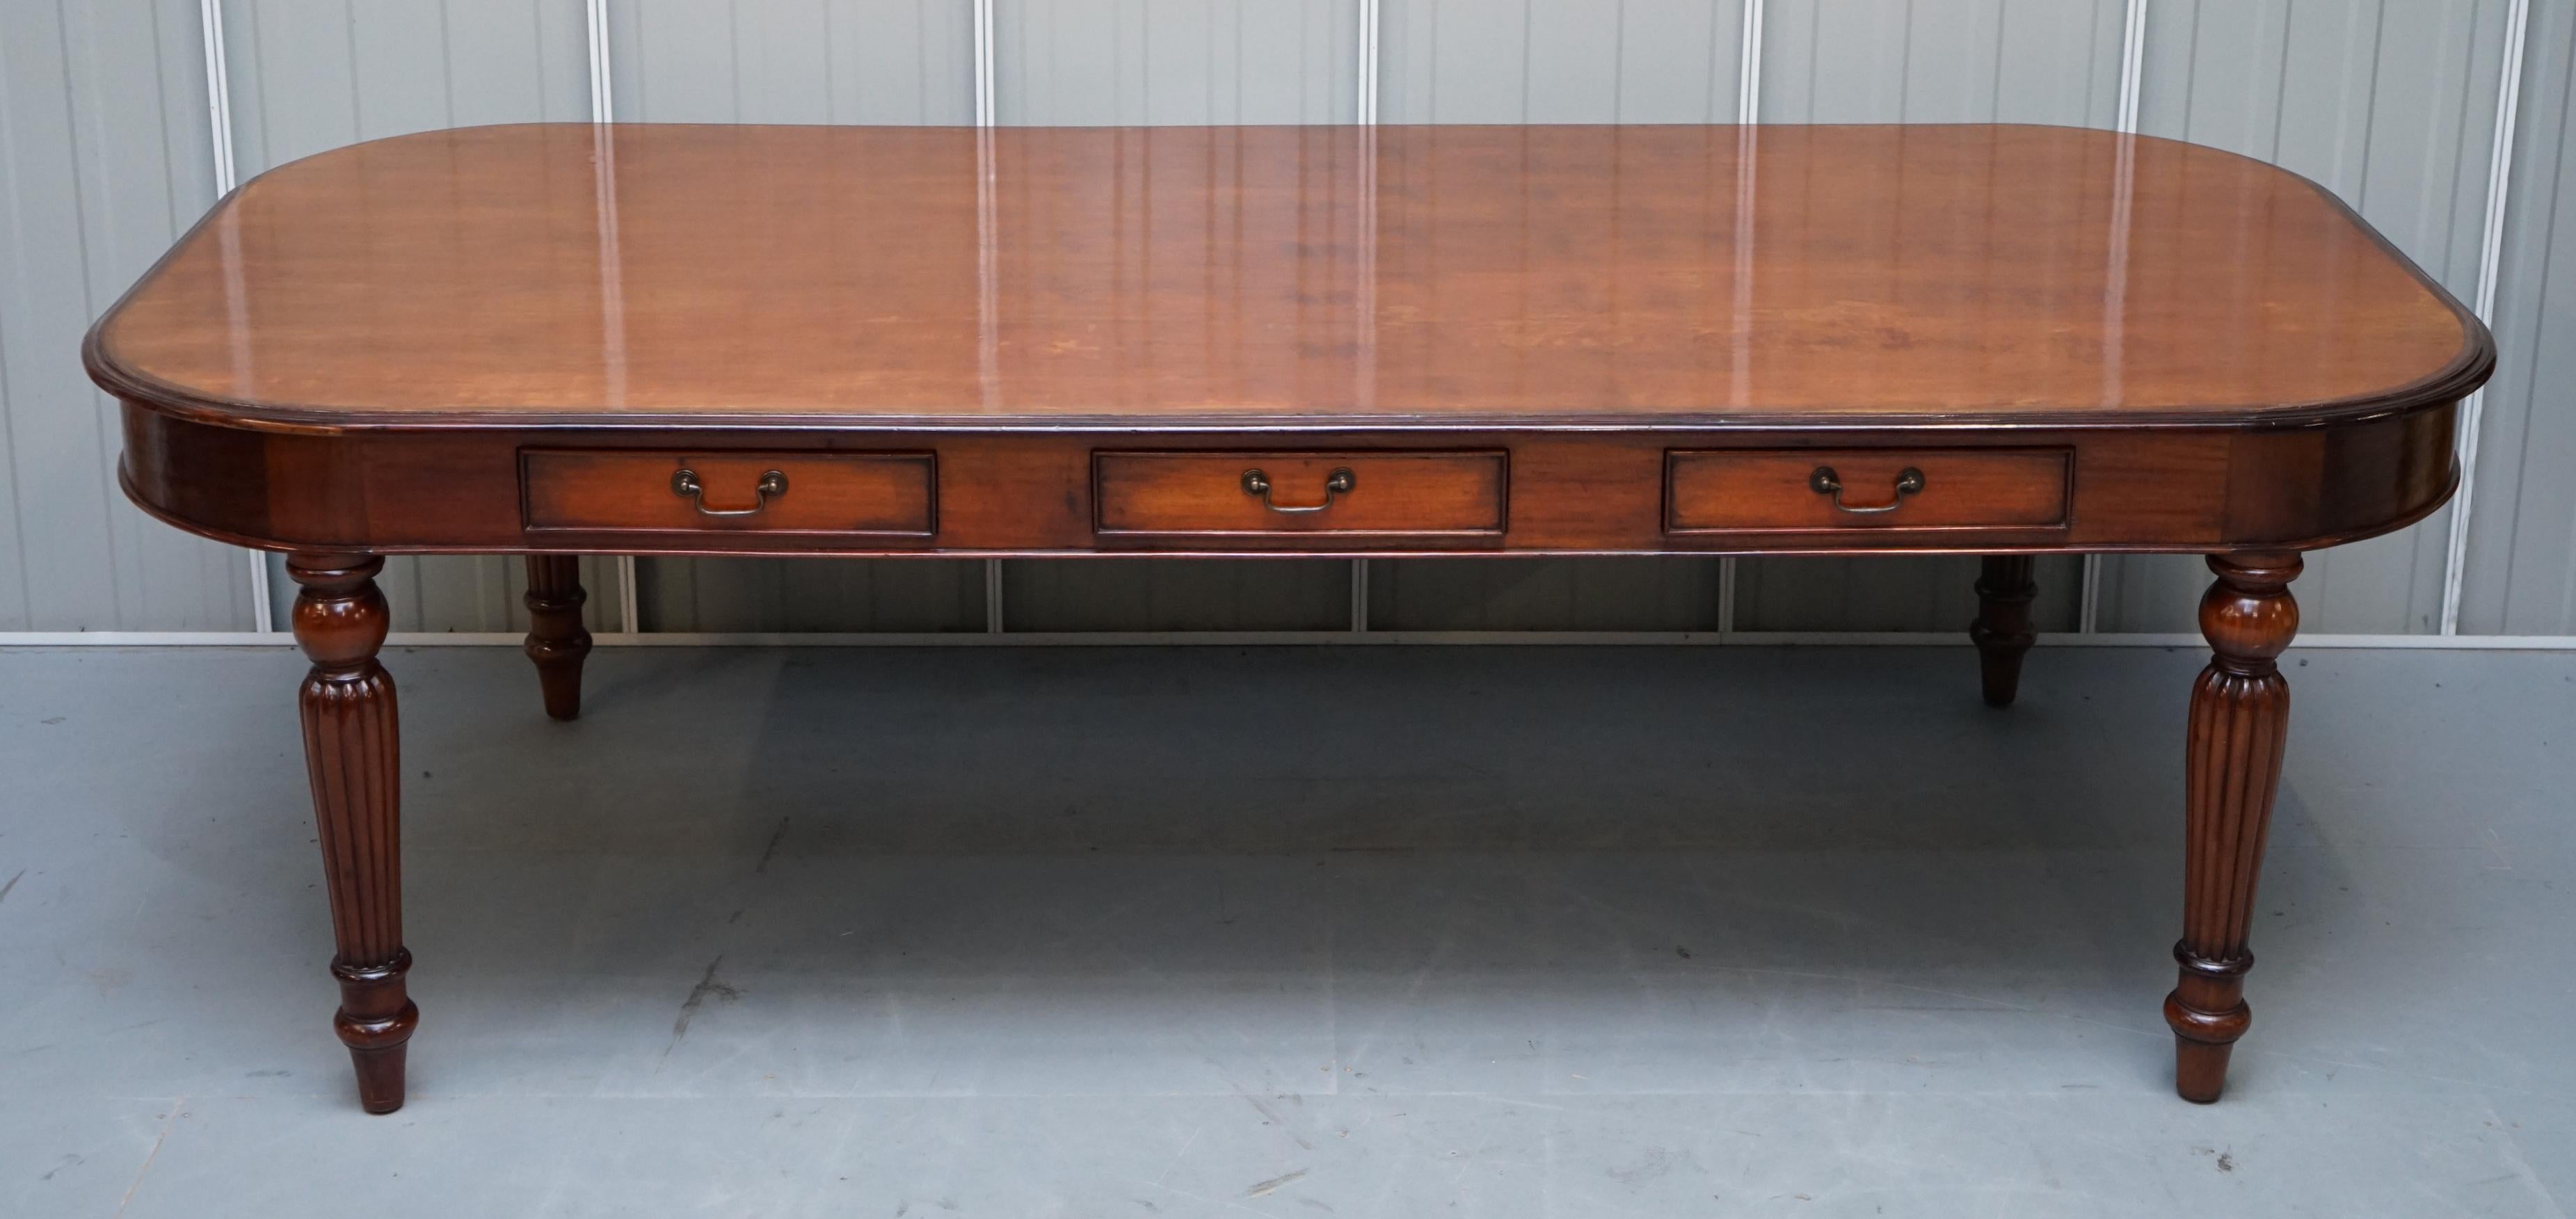 Großer Esstisch mit sechs Schubladen für 10-12 Personen aus Hartholz im Regency-Stil mit abnehmbaren Beinen (Englisch)